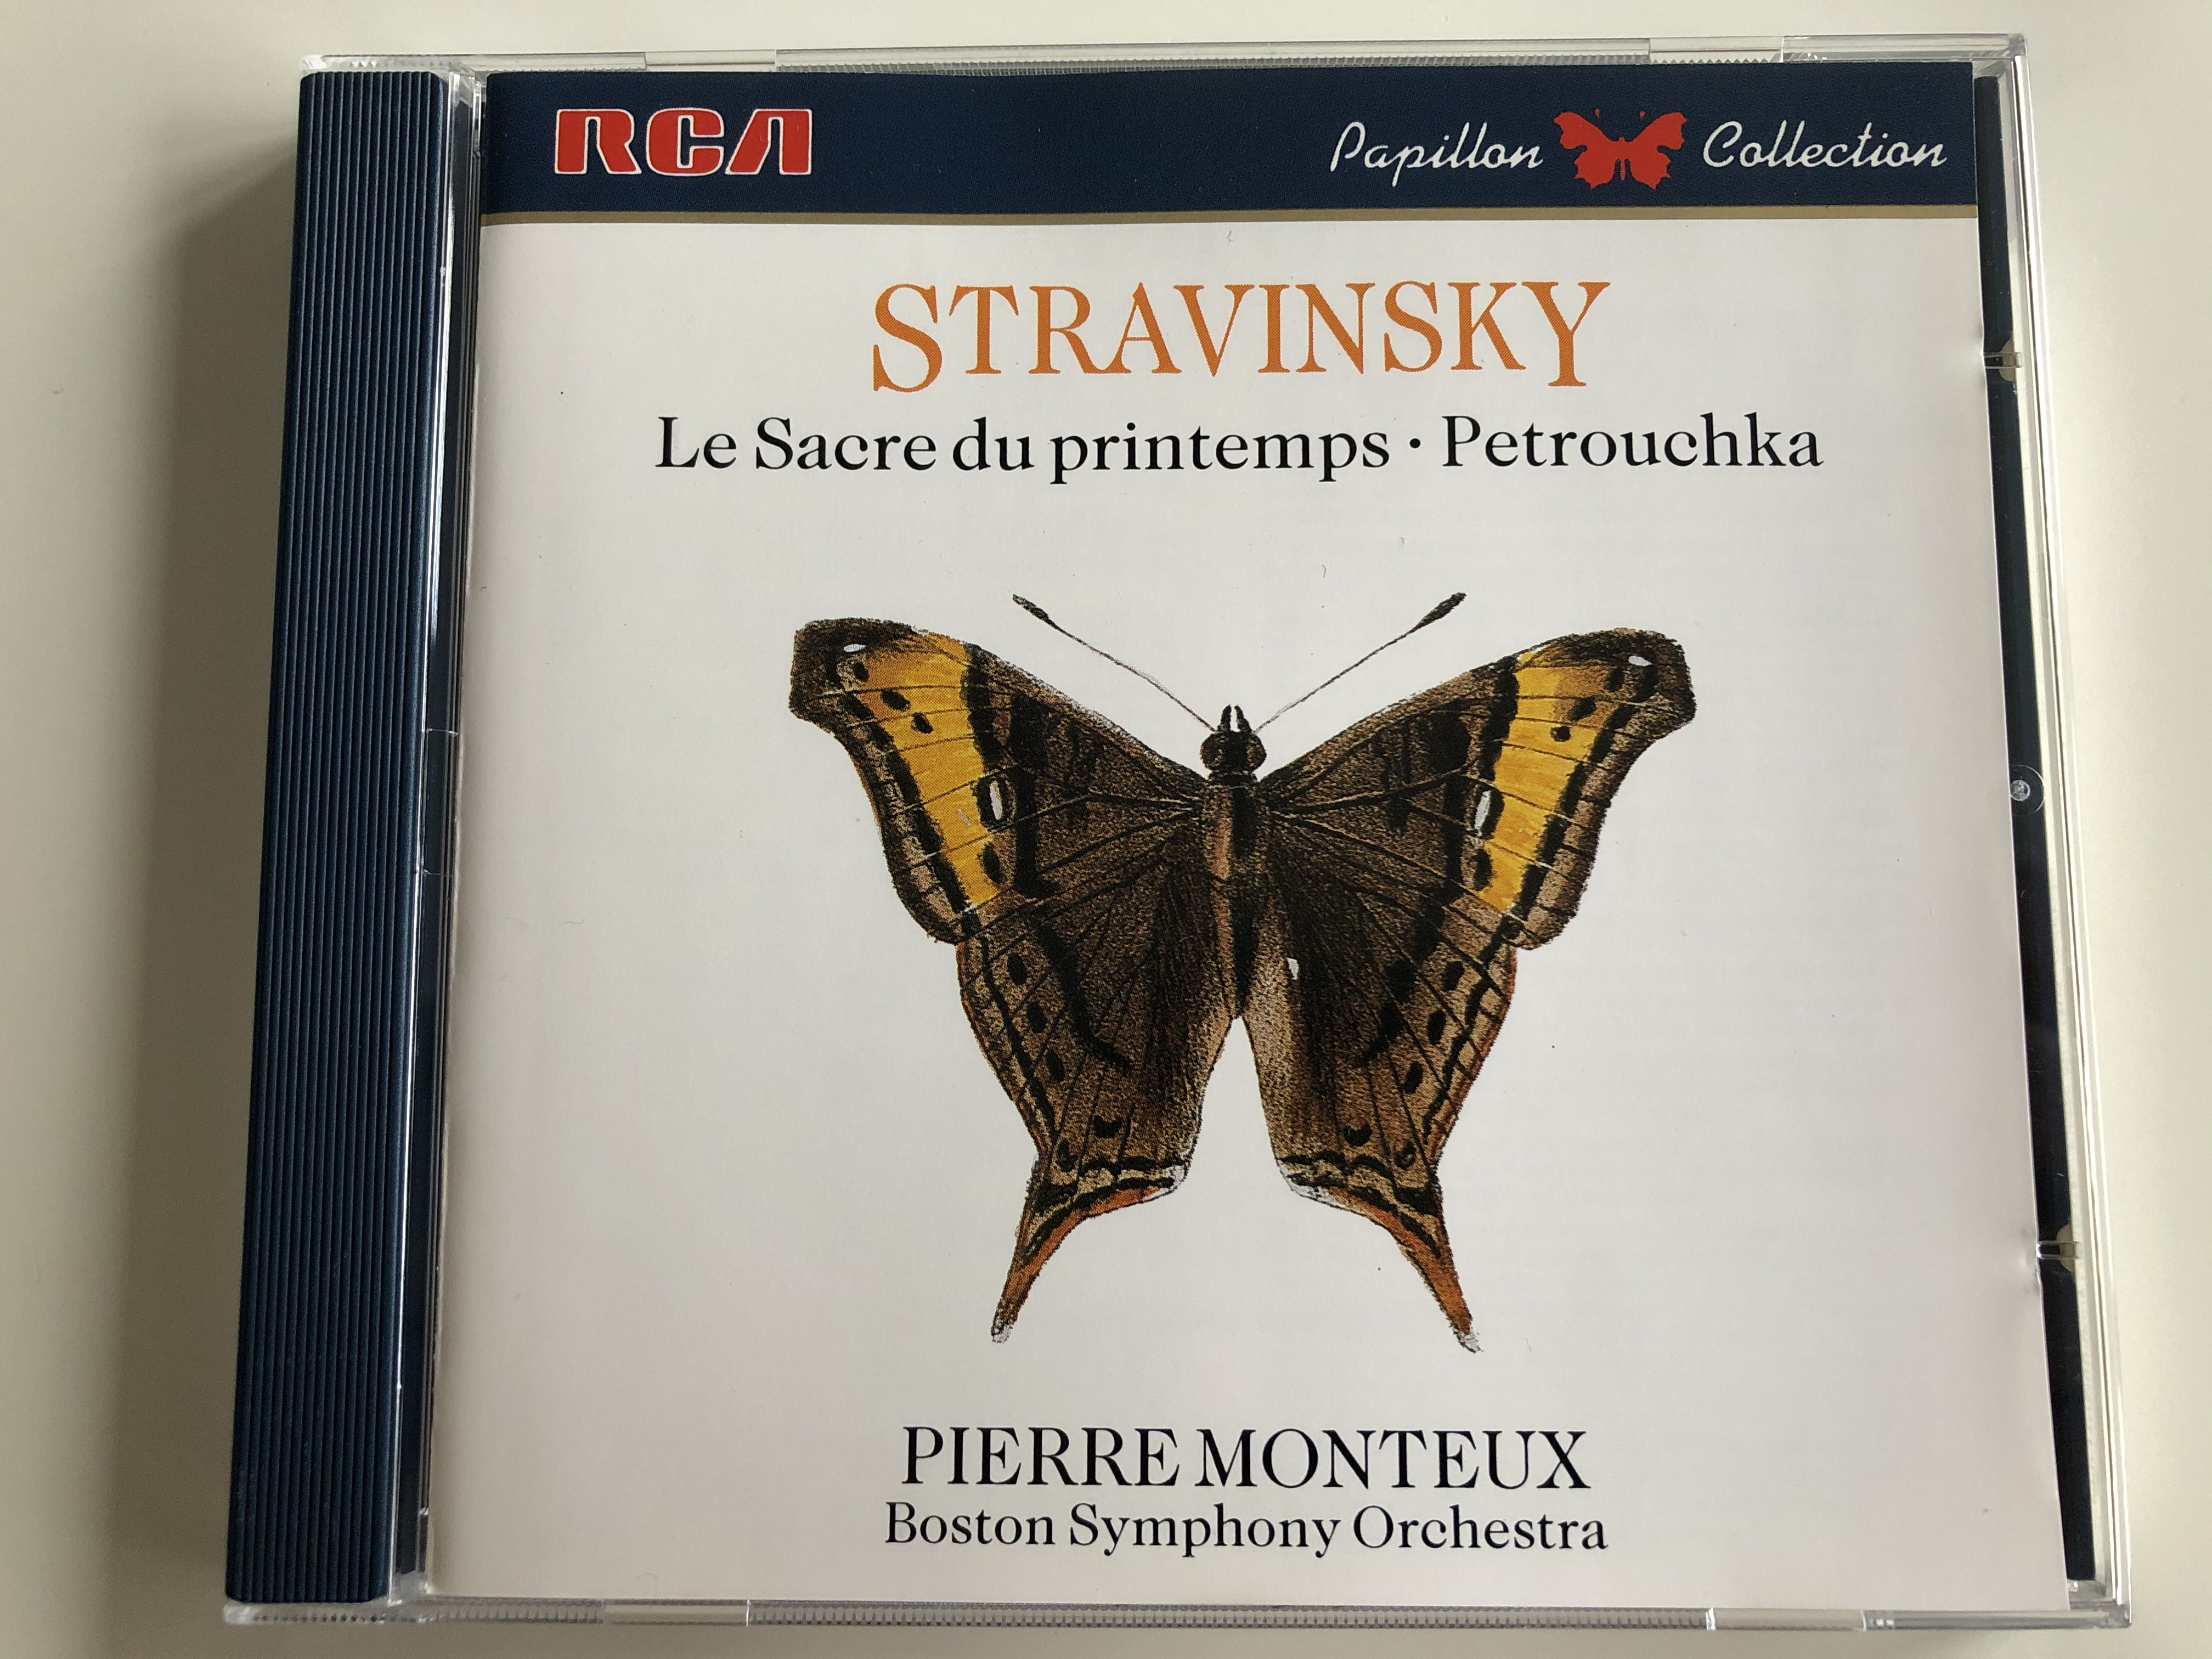 stravinsky-le-sacre-du-printemps-petrouchka-pierre-monteux-boston-symphony-orchestra-rca-audio-cd-1987-gd86529-1-.jpg